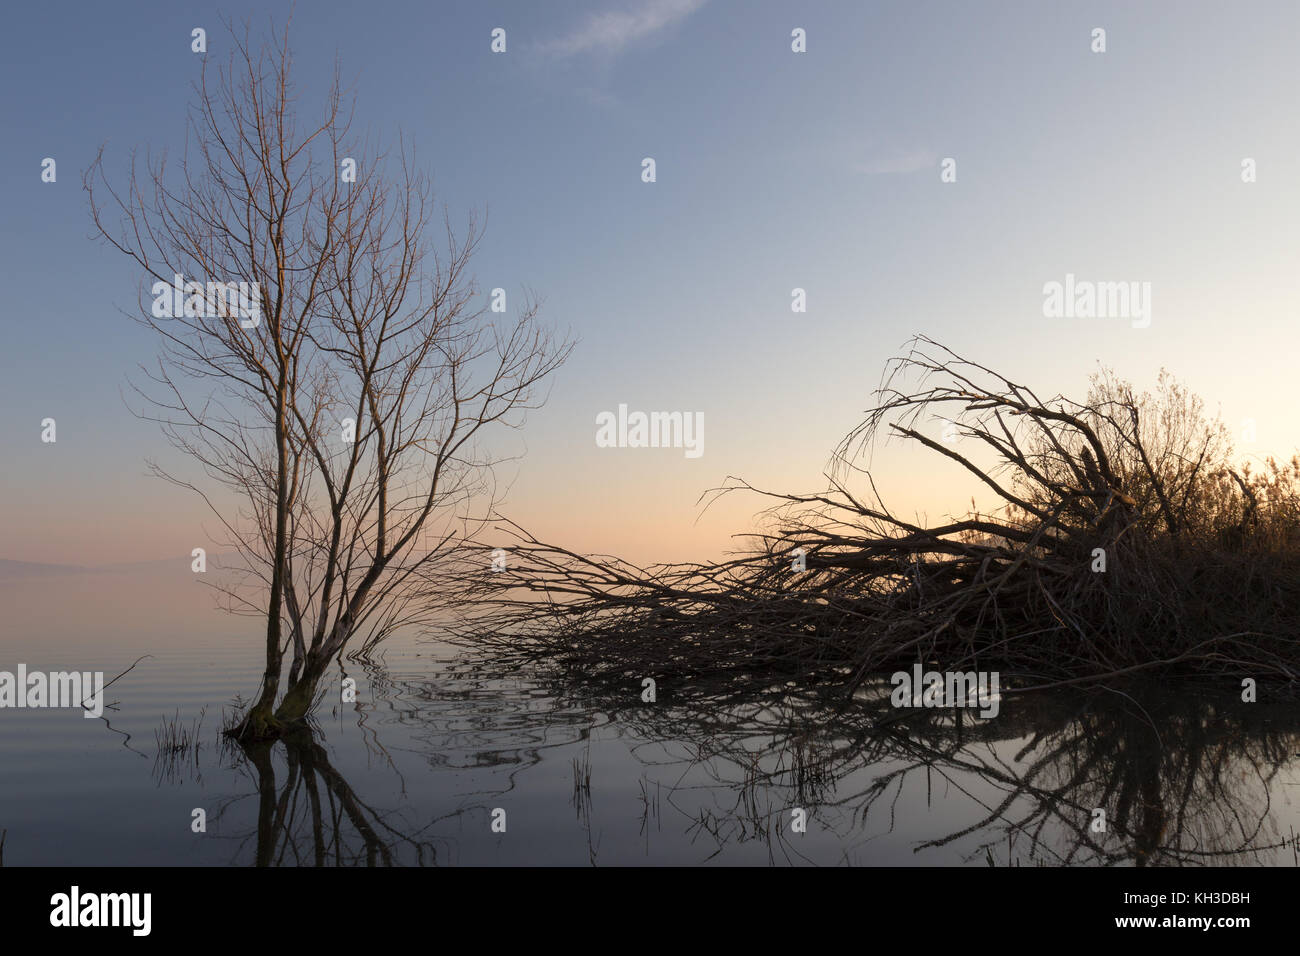 Skelett- und umgestürzte Bäume auf einem See bei Sonnenuntergang, mit schönen Reflexionen und warme Töne in den Himmel Stockfoto